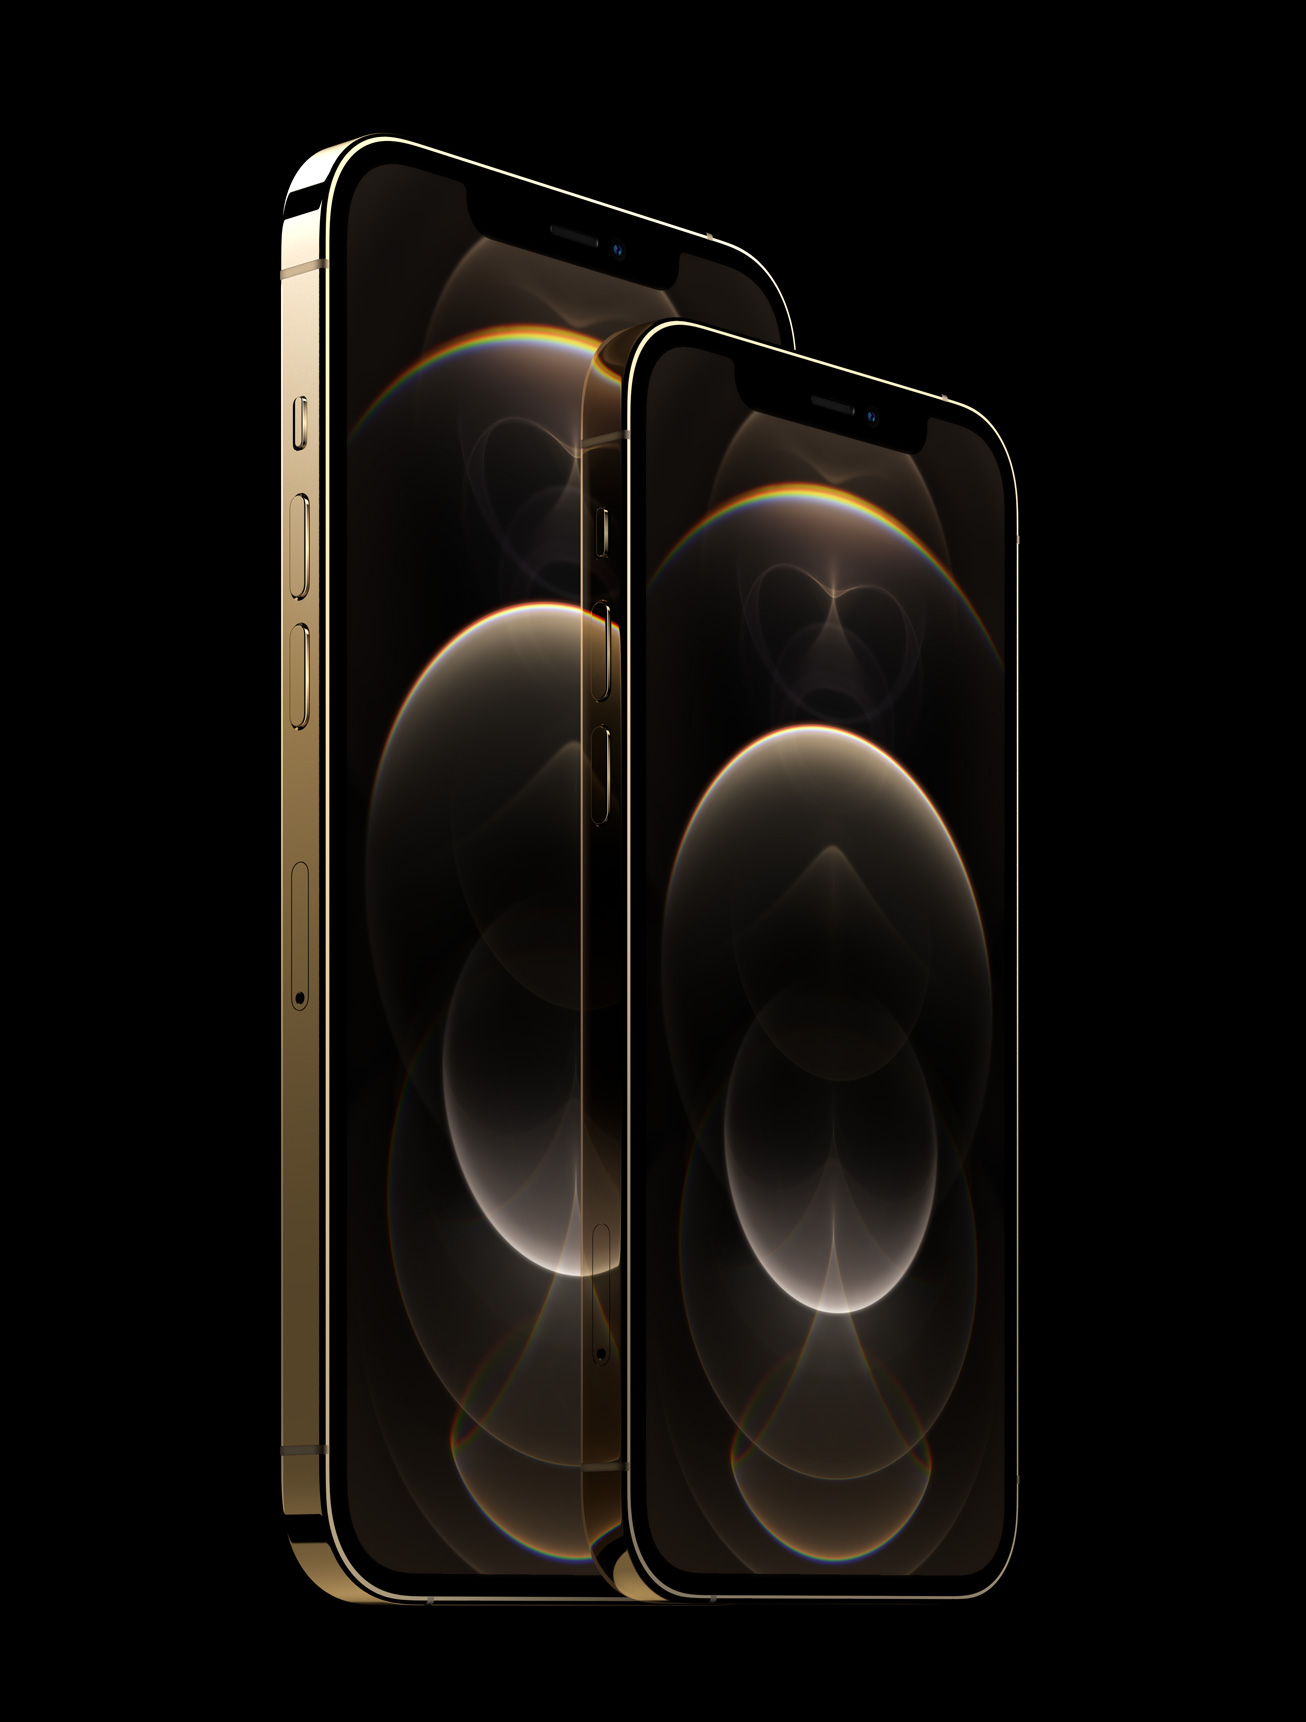 iPhone 12 Pro и iPhone 12 Pro Max: мощные 5G-флагманы с процессором A14  Bionic и продвинутыми камерами | gagadget.com